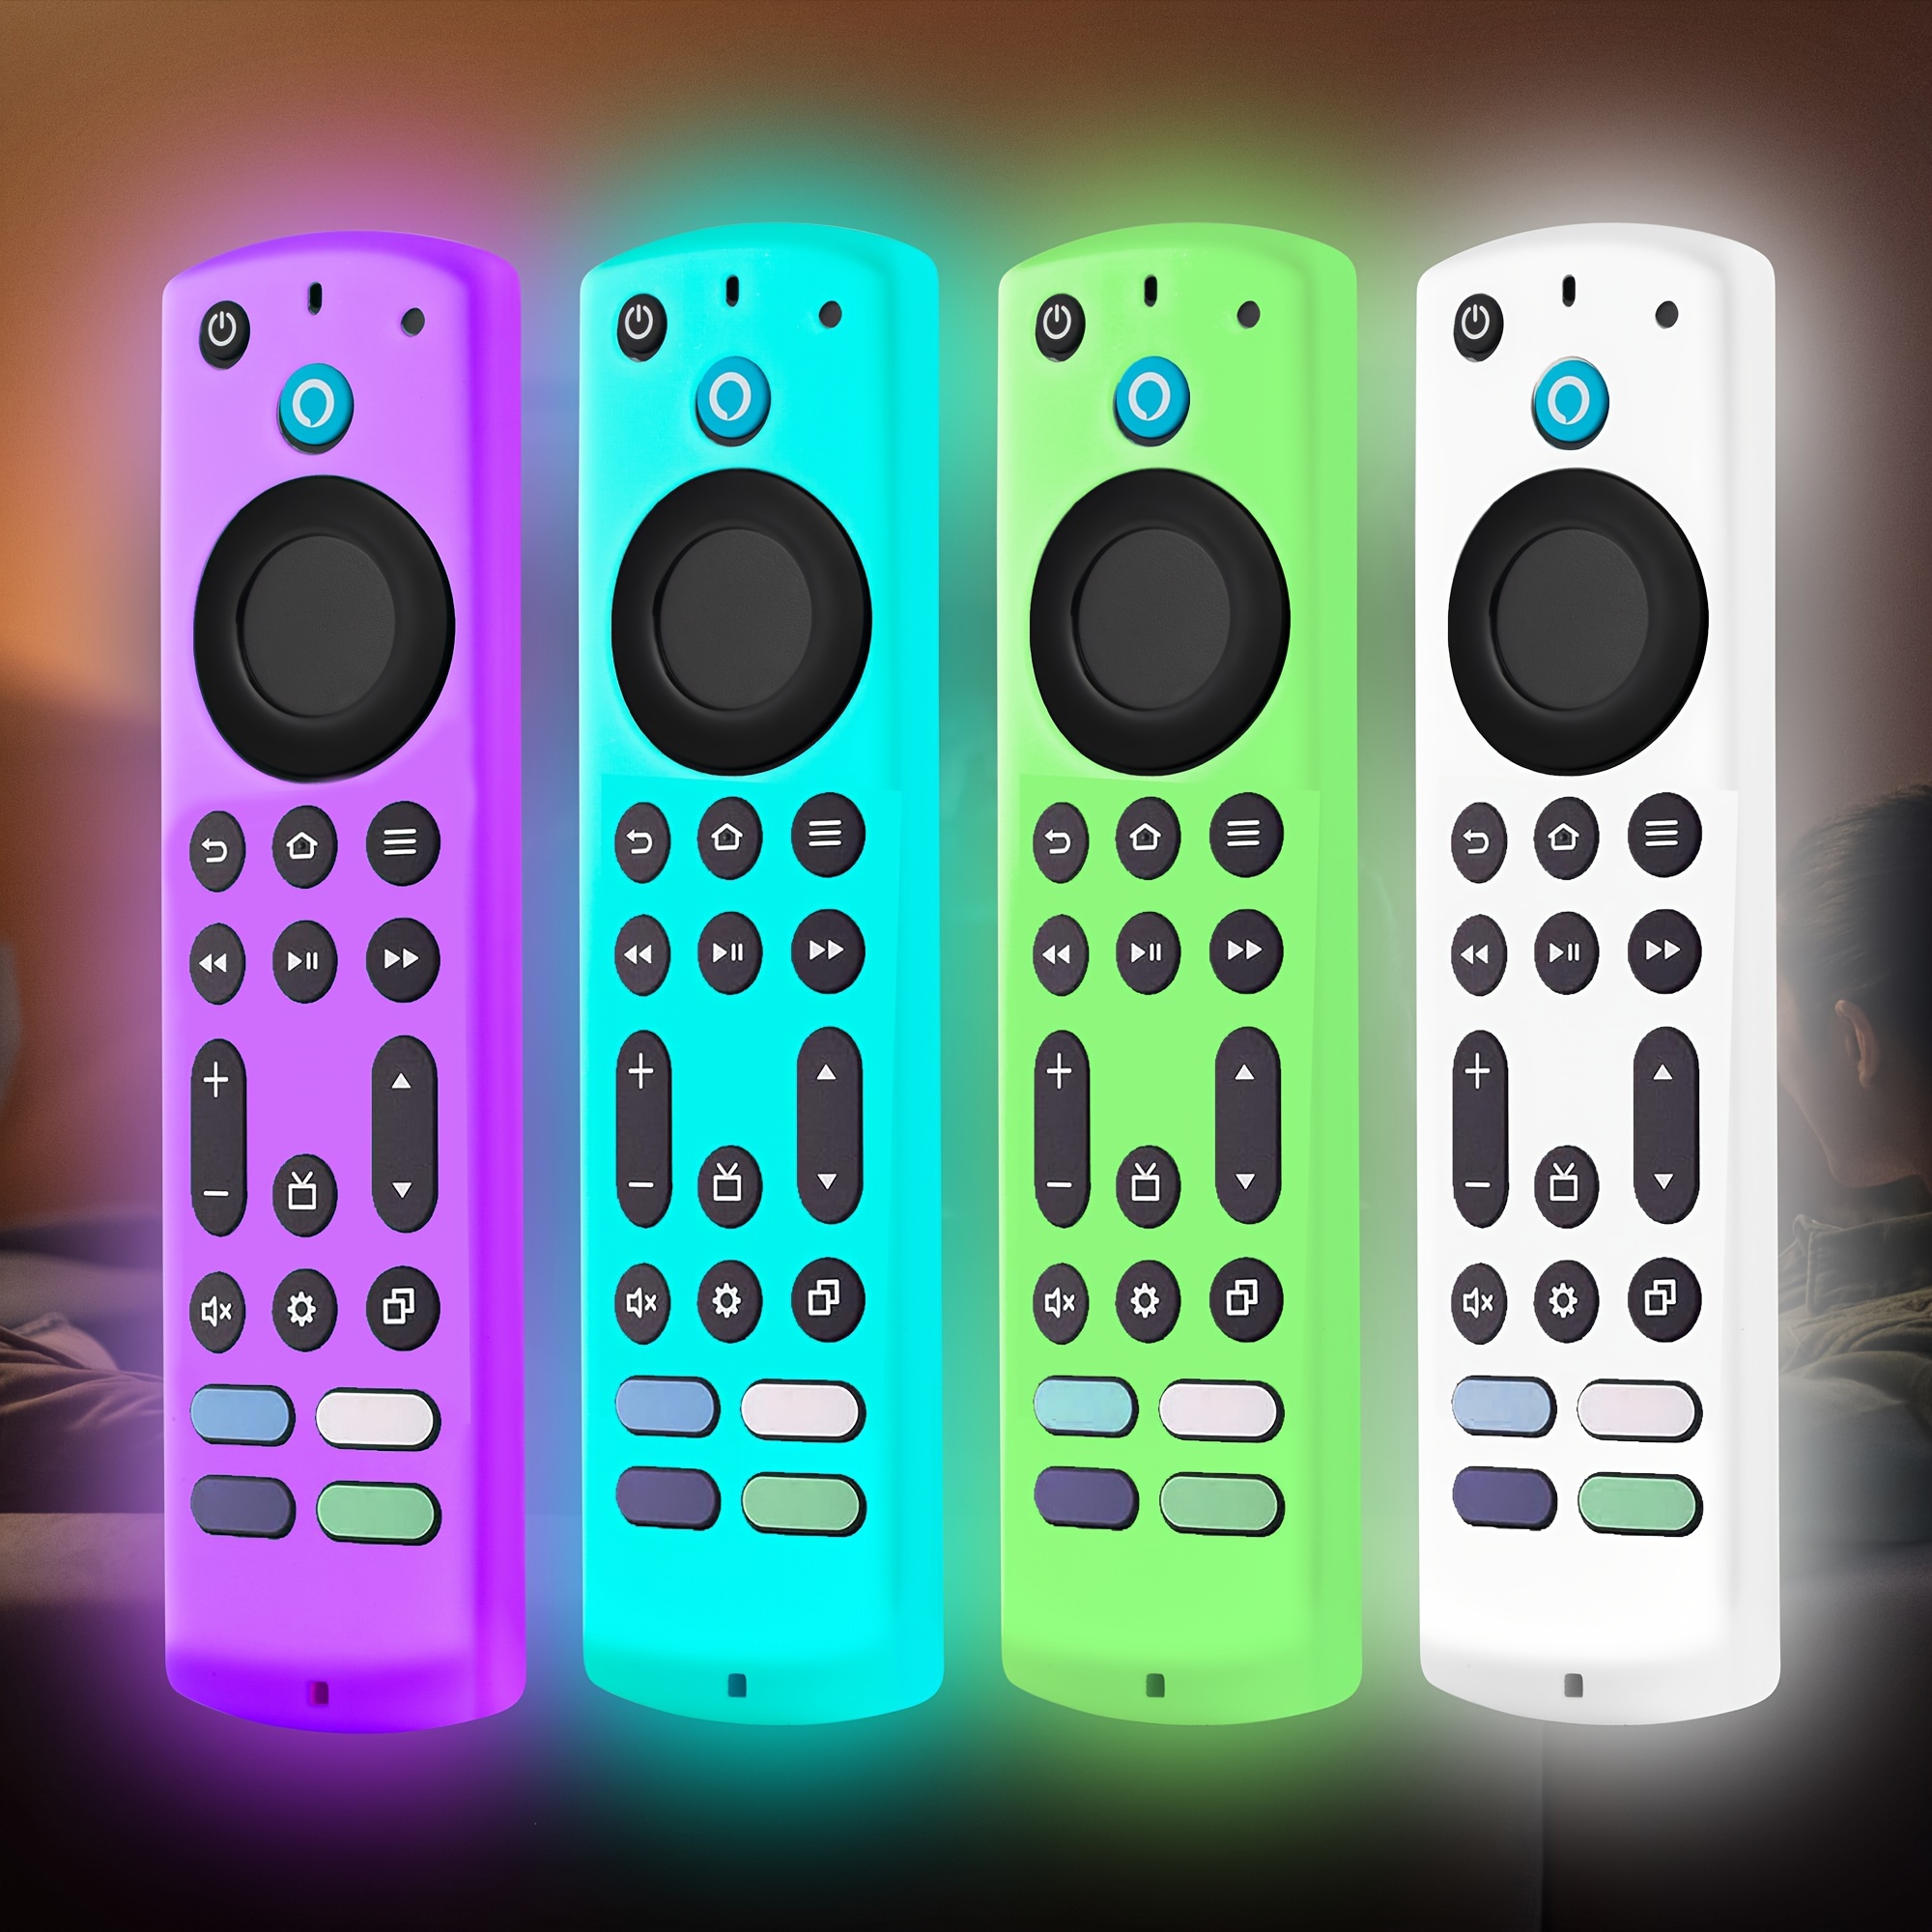  X96 Mini Remote Control X96 S905W Replacement Remote Control  for MXQ Pro 4K,T95M,T95N,T95X,MX9,H96,H96 pro+ Android TV Box Remote  Control : Electronics